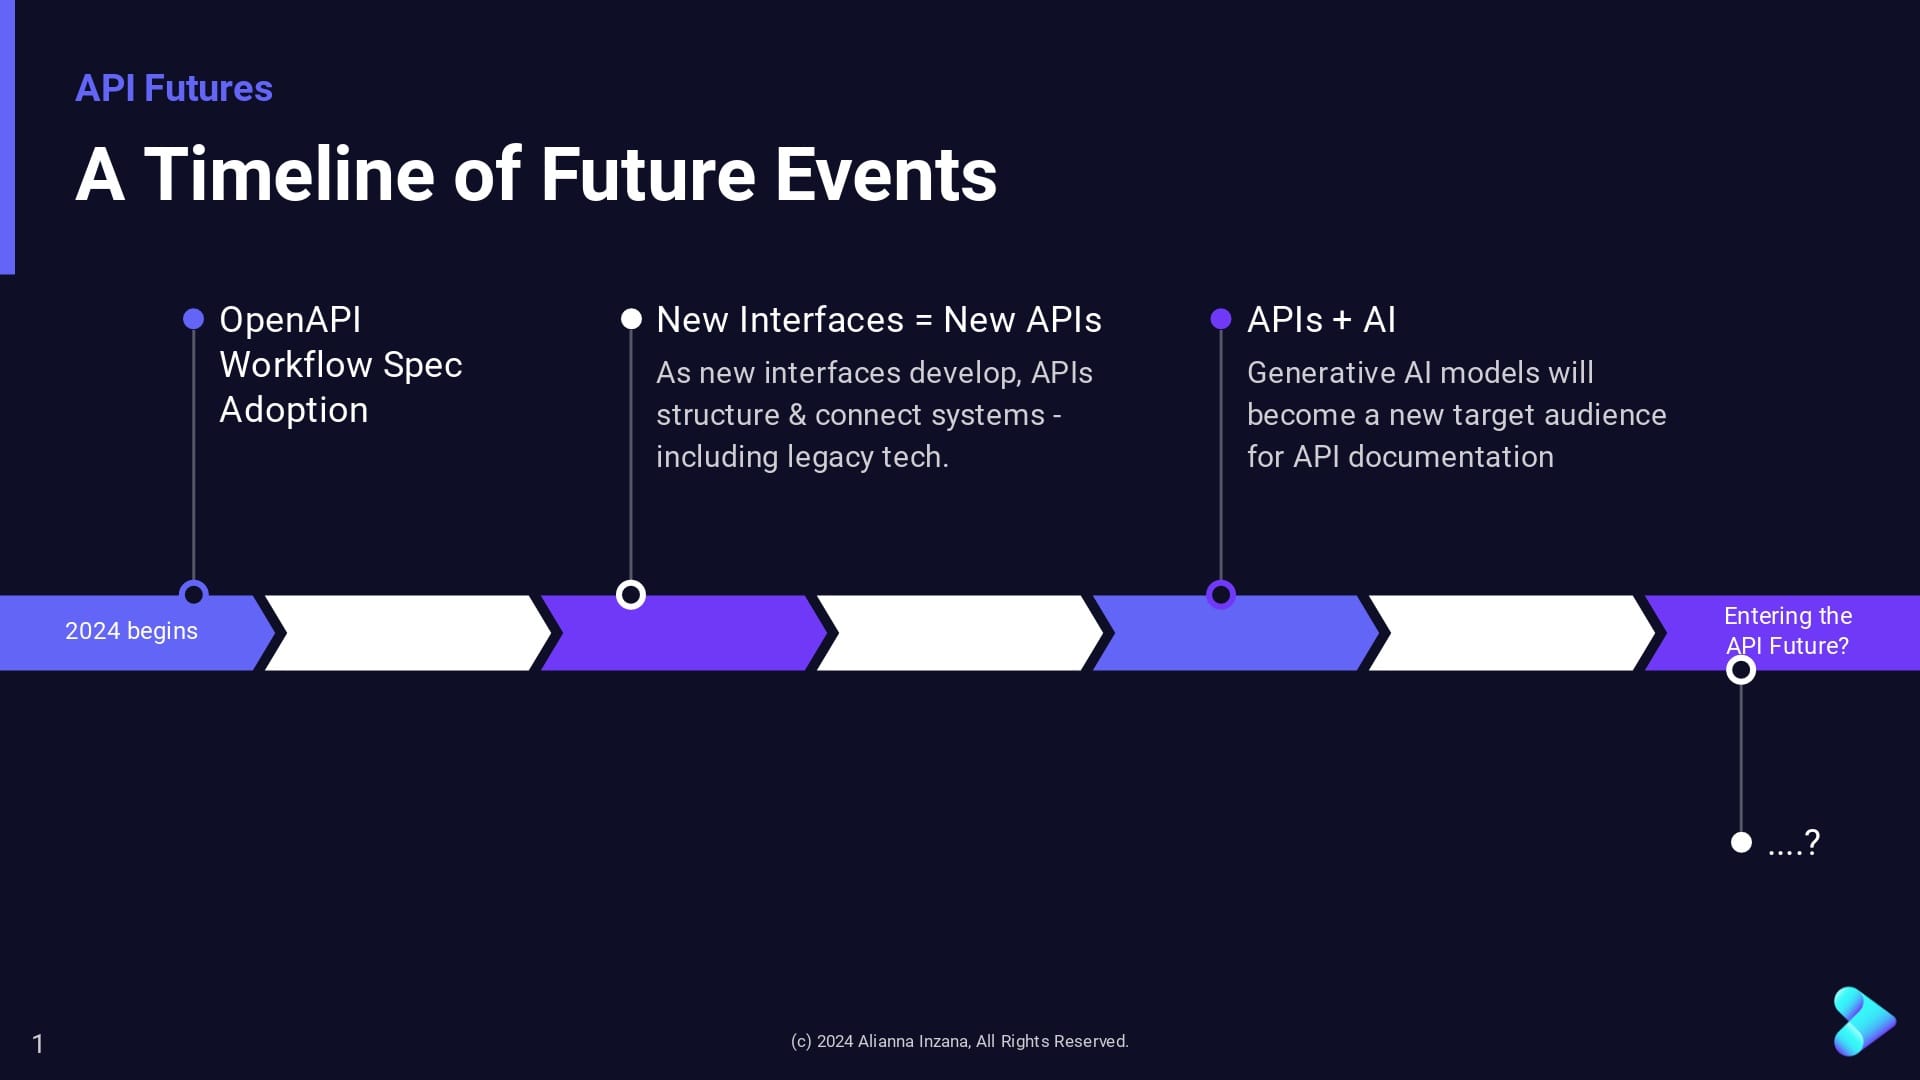 API Futures: A Timeline of Future Events